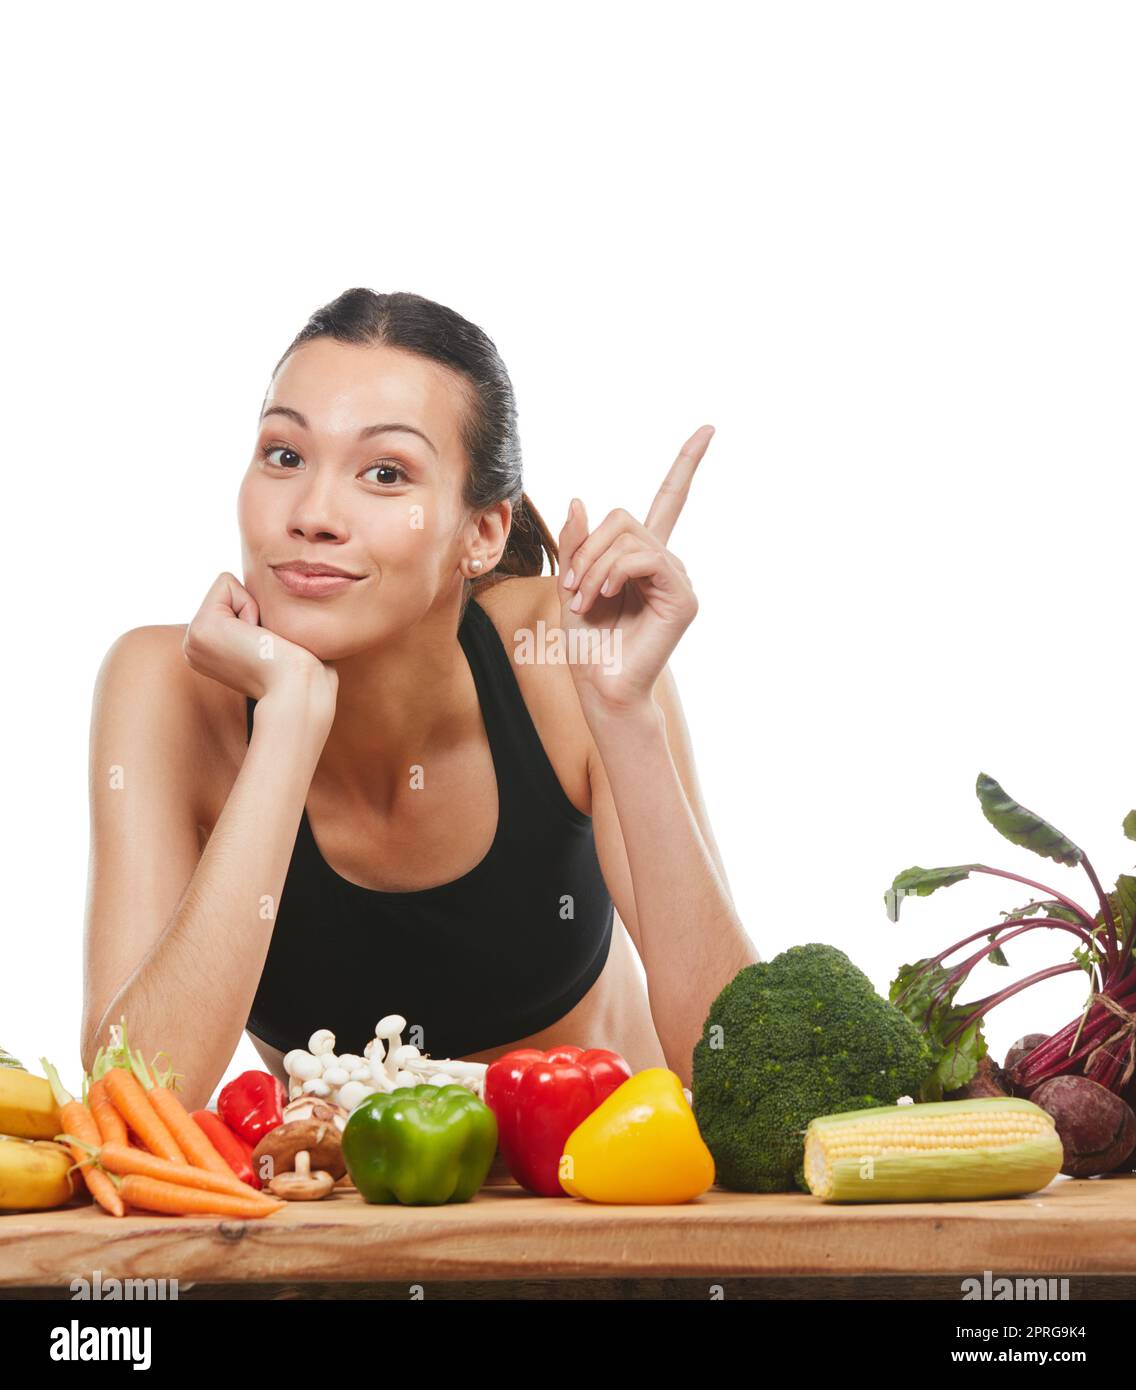 Votre santé vaut la peine de prêter attention à. Studio portrait d'une jeune femme attrayante posant avec une table pleine de légumes sur un fond blanc. Banque D'Images